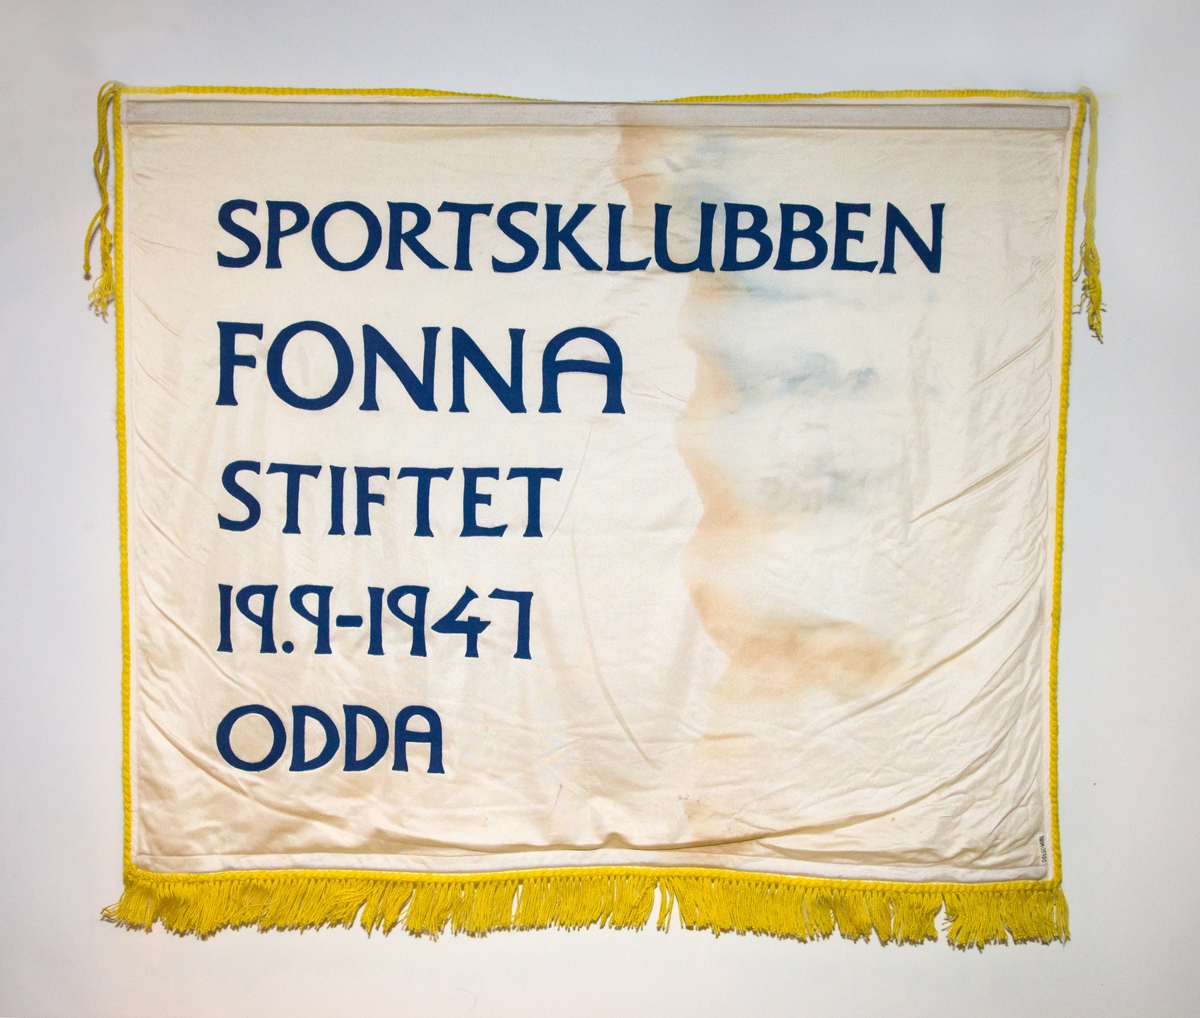 Motiv på ei side av fana er logo for sportsklubben Fonna: blå oval sirkel, gul inni, kvit vimpel med teksten FONNA på tvers av sirkel